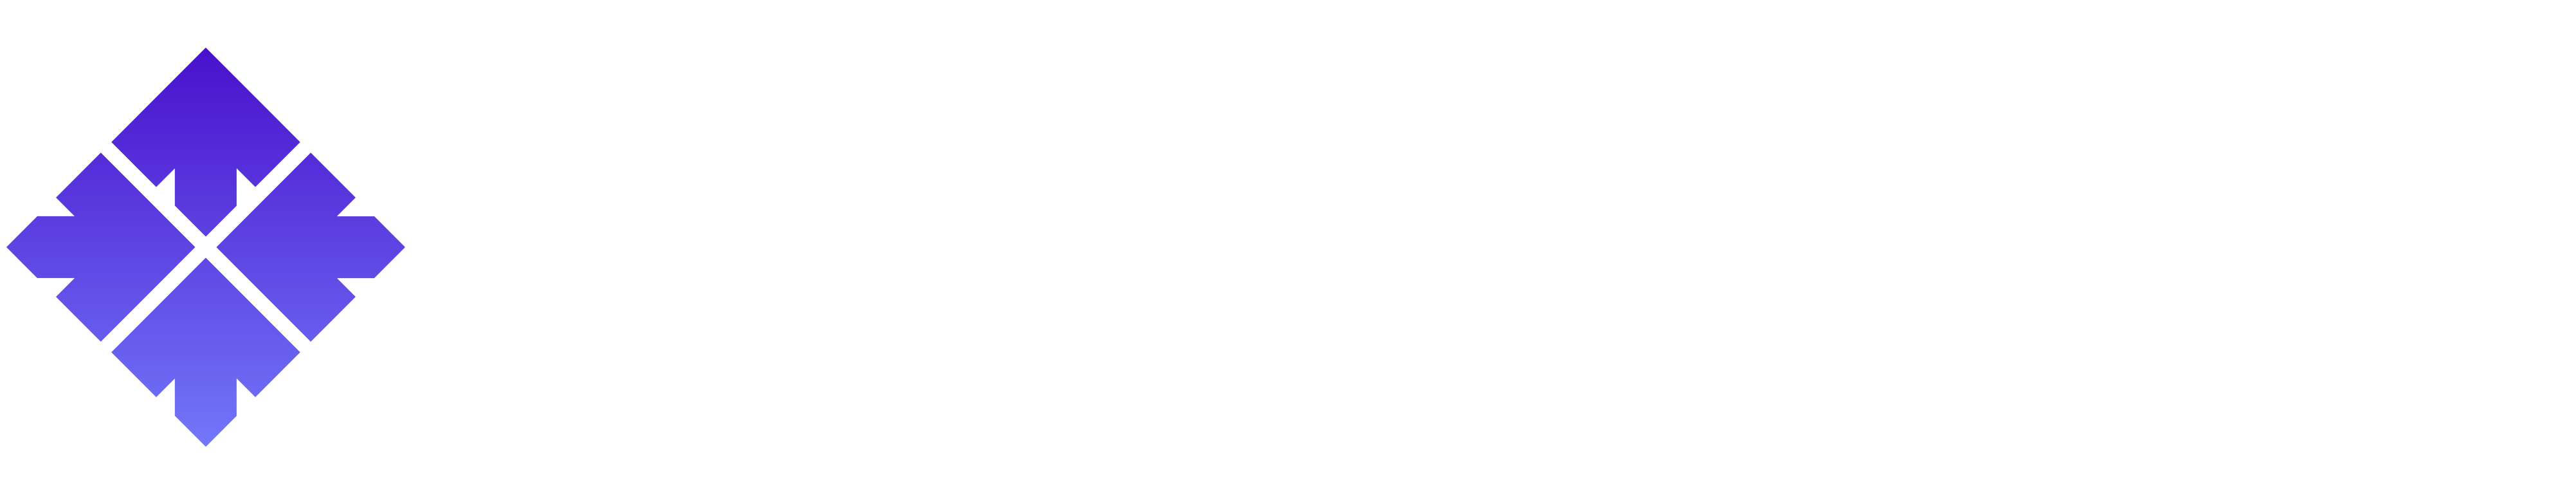 Manhattan Skyline Logo White